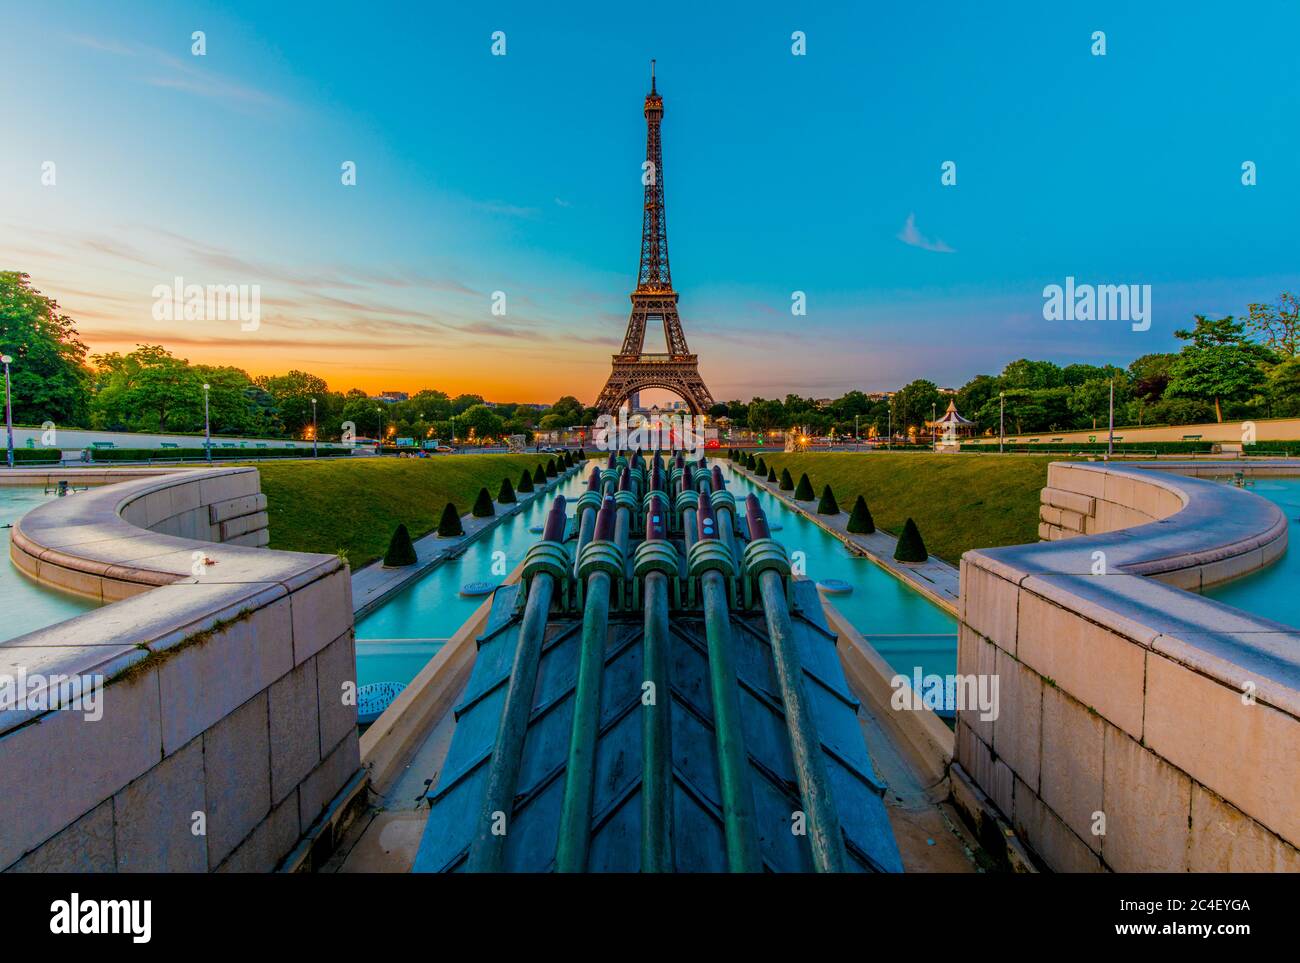 Vista della Torre Eiffel all'alba dai Giardini del Trocadéro. Incorniciando la Torre Eiffel si trovano le famose fontane di Varsavia. Foto Stock